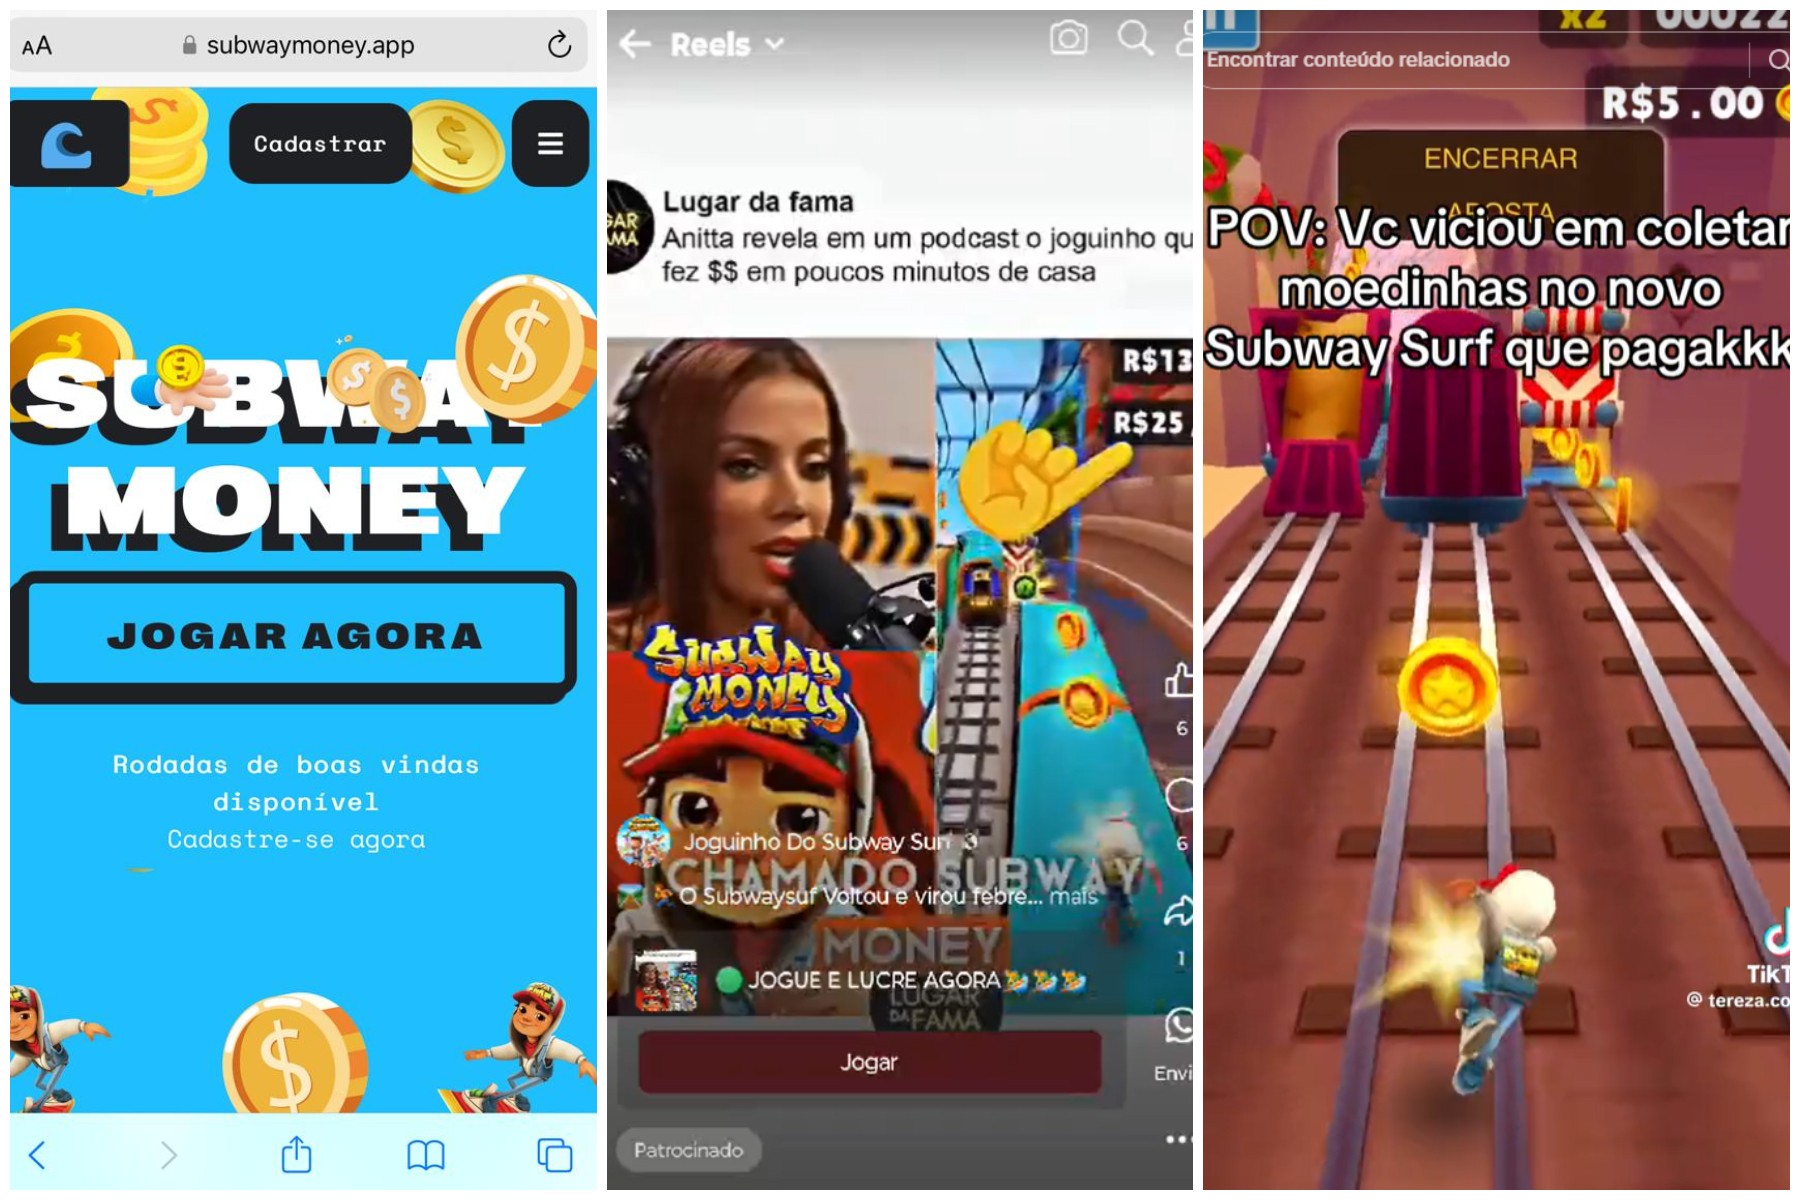 ‘Subway Money’: golpistas criam deepfakes de famosos para prometer dinheiro em jogo falso